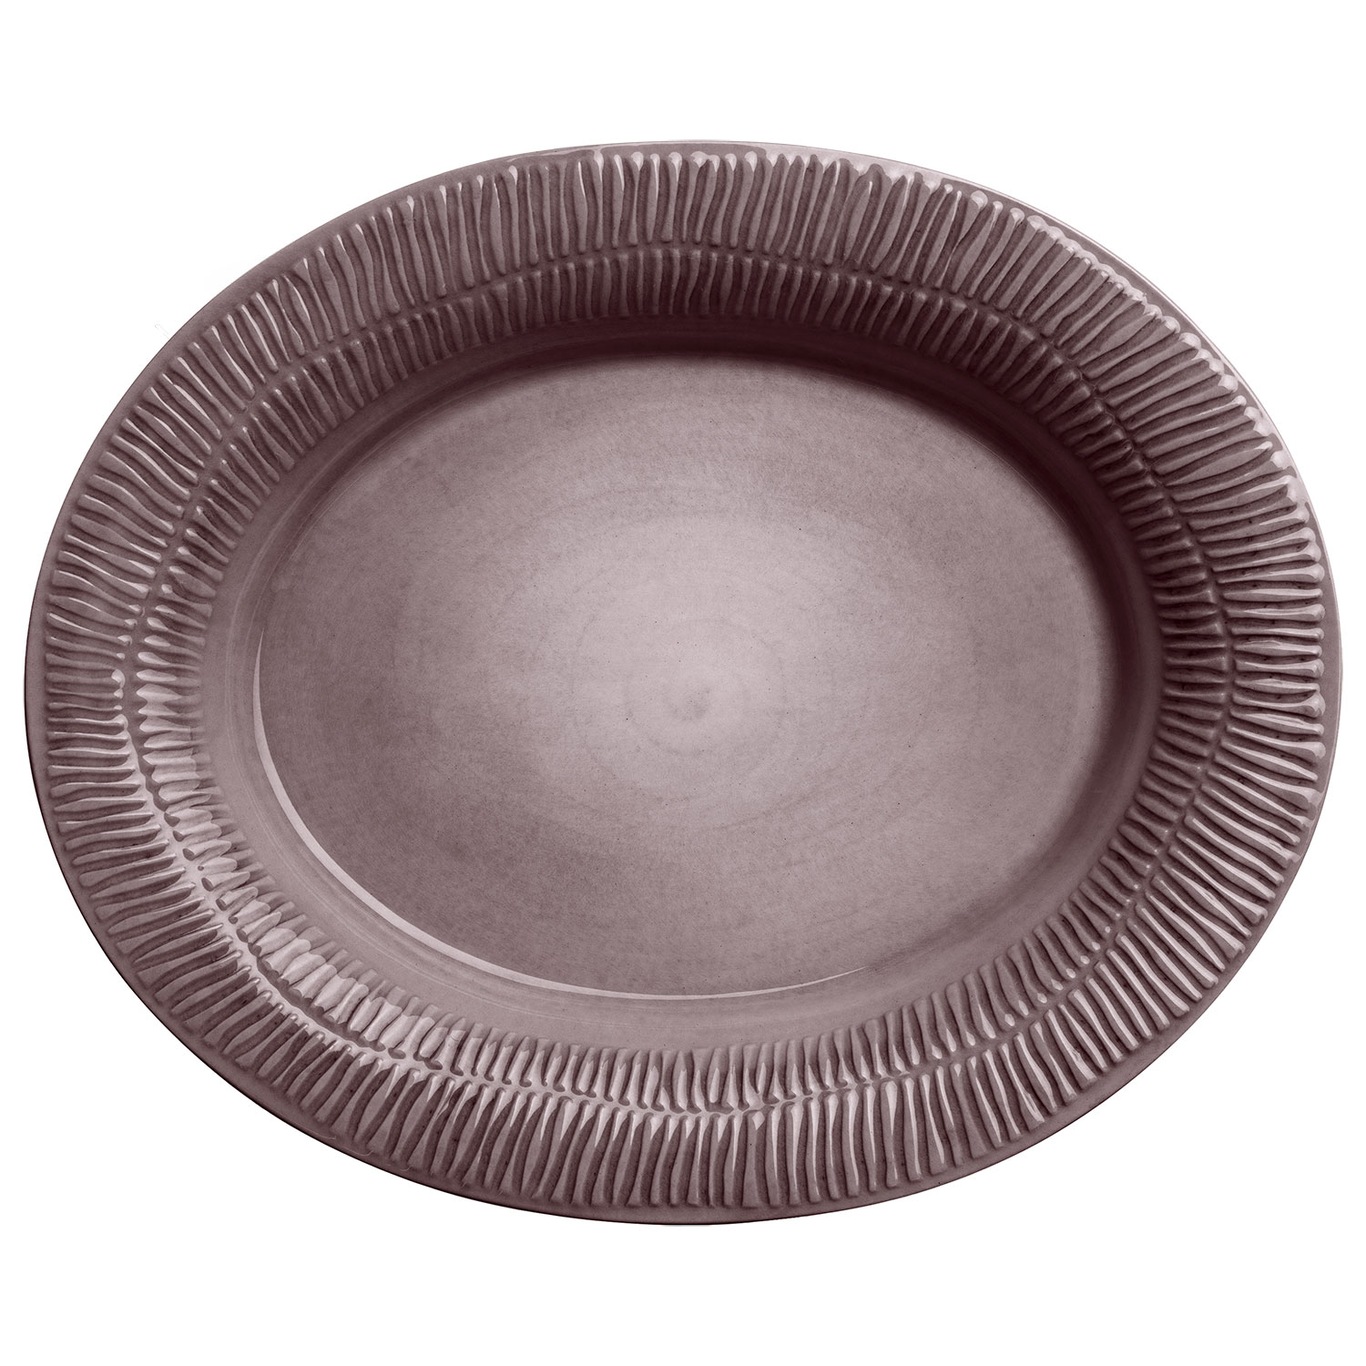 Stripes Platte 35x30 cm, Pflaume